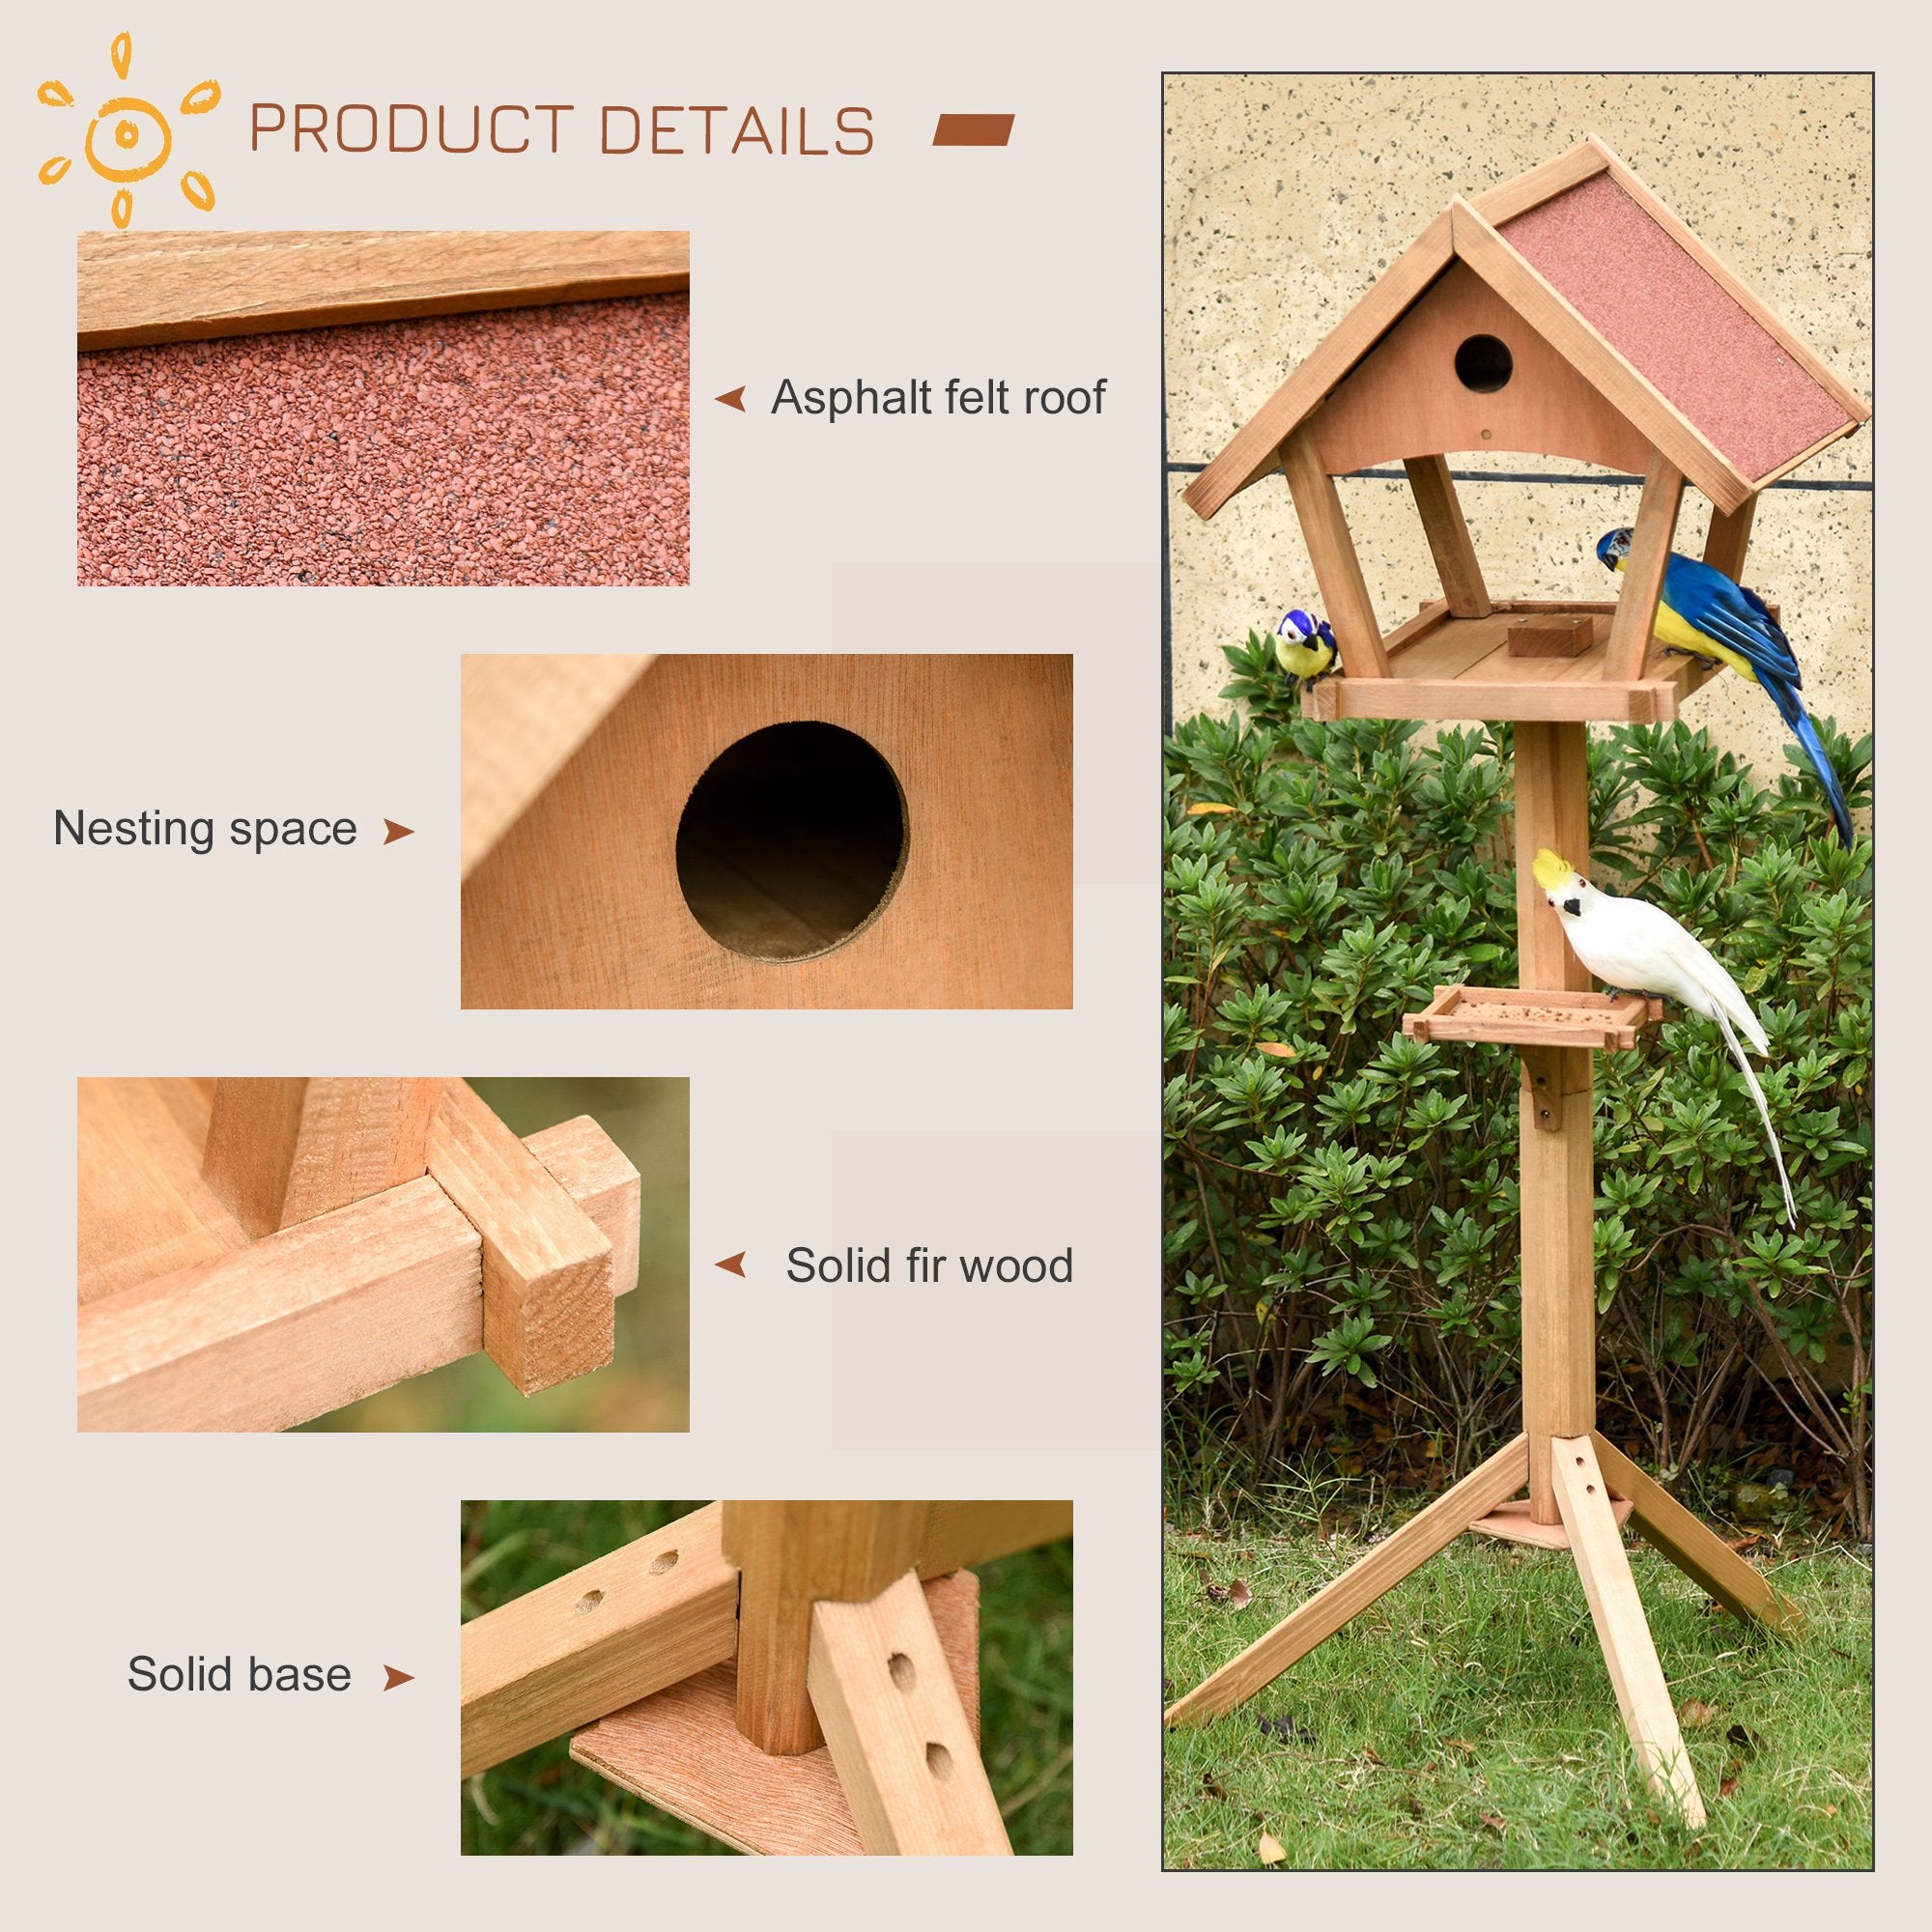 Wooden Bird Feeder Stand for Garden Pre-cut Weather Resistant 49 x 45 x 139cm